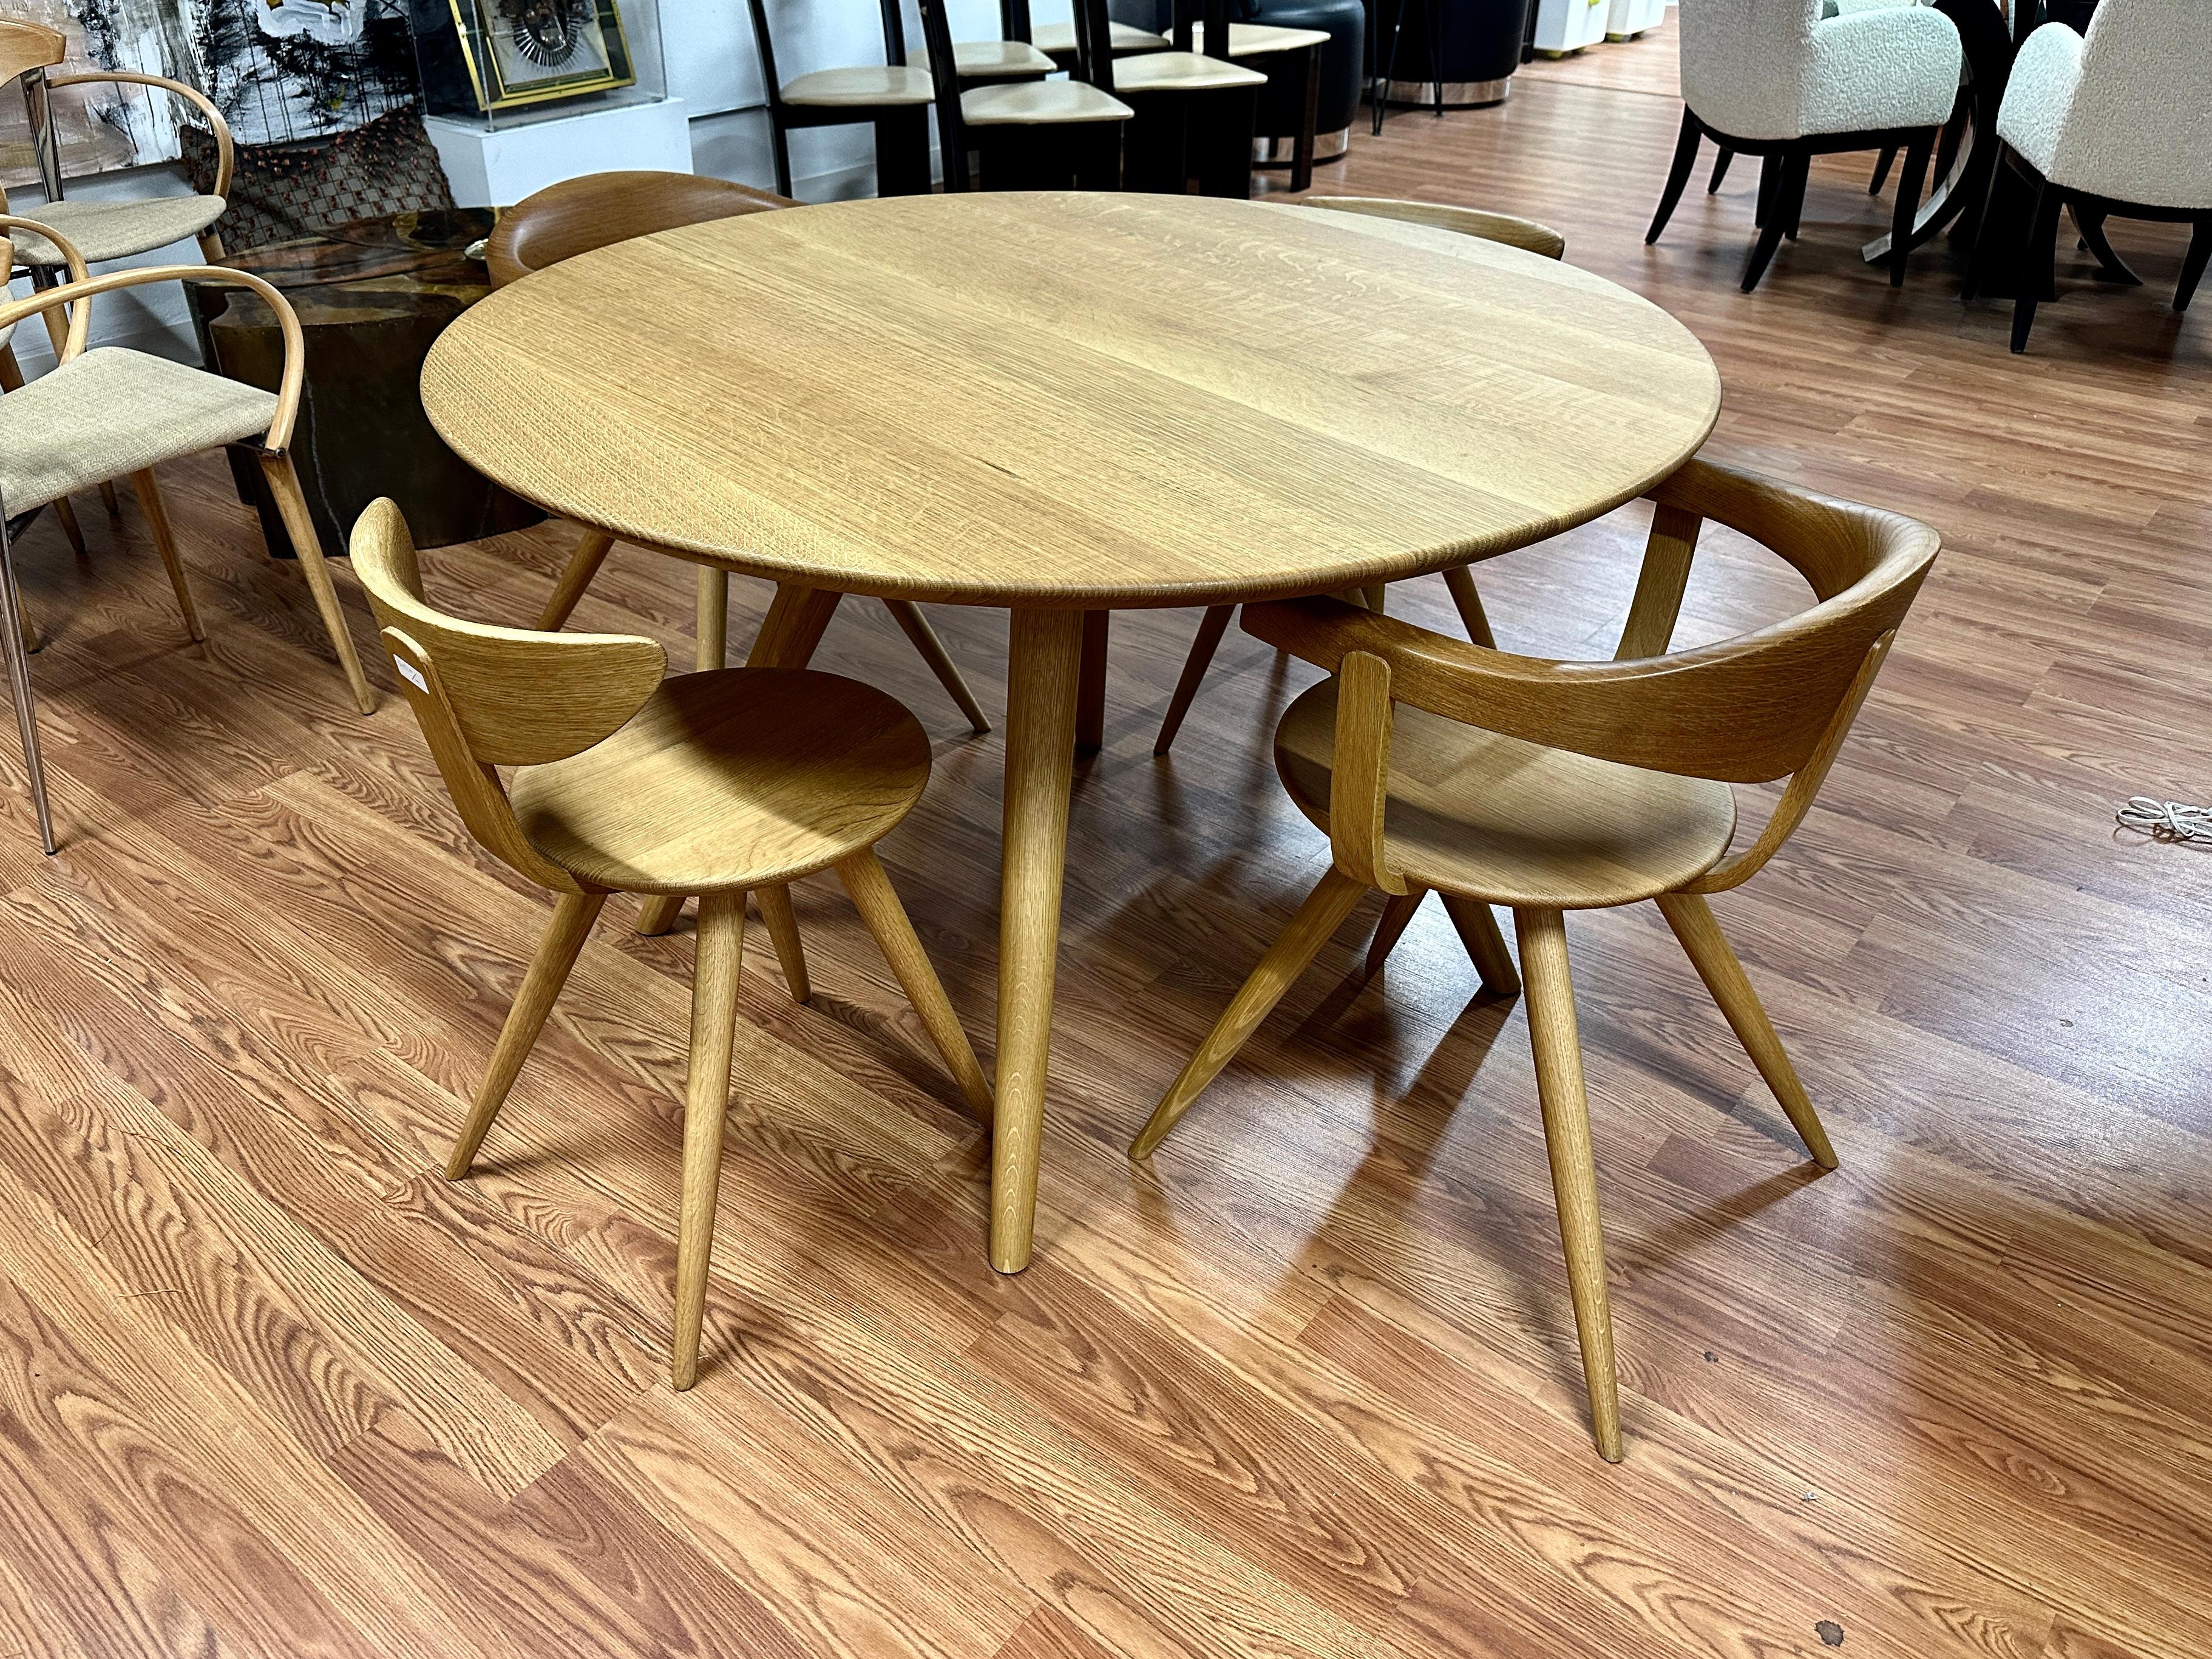 Une magnifique table et des chaises de salle à manger par Sori Yanaga Design/One pour Hida au Japon. Ce magnifique ensemble en chêne se compose de 2 fauteuils, 2 chaises d'appoint et d'une table de 47 pouces de diamètre.
Alors qu'il est décédé en